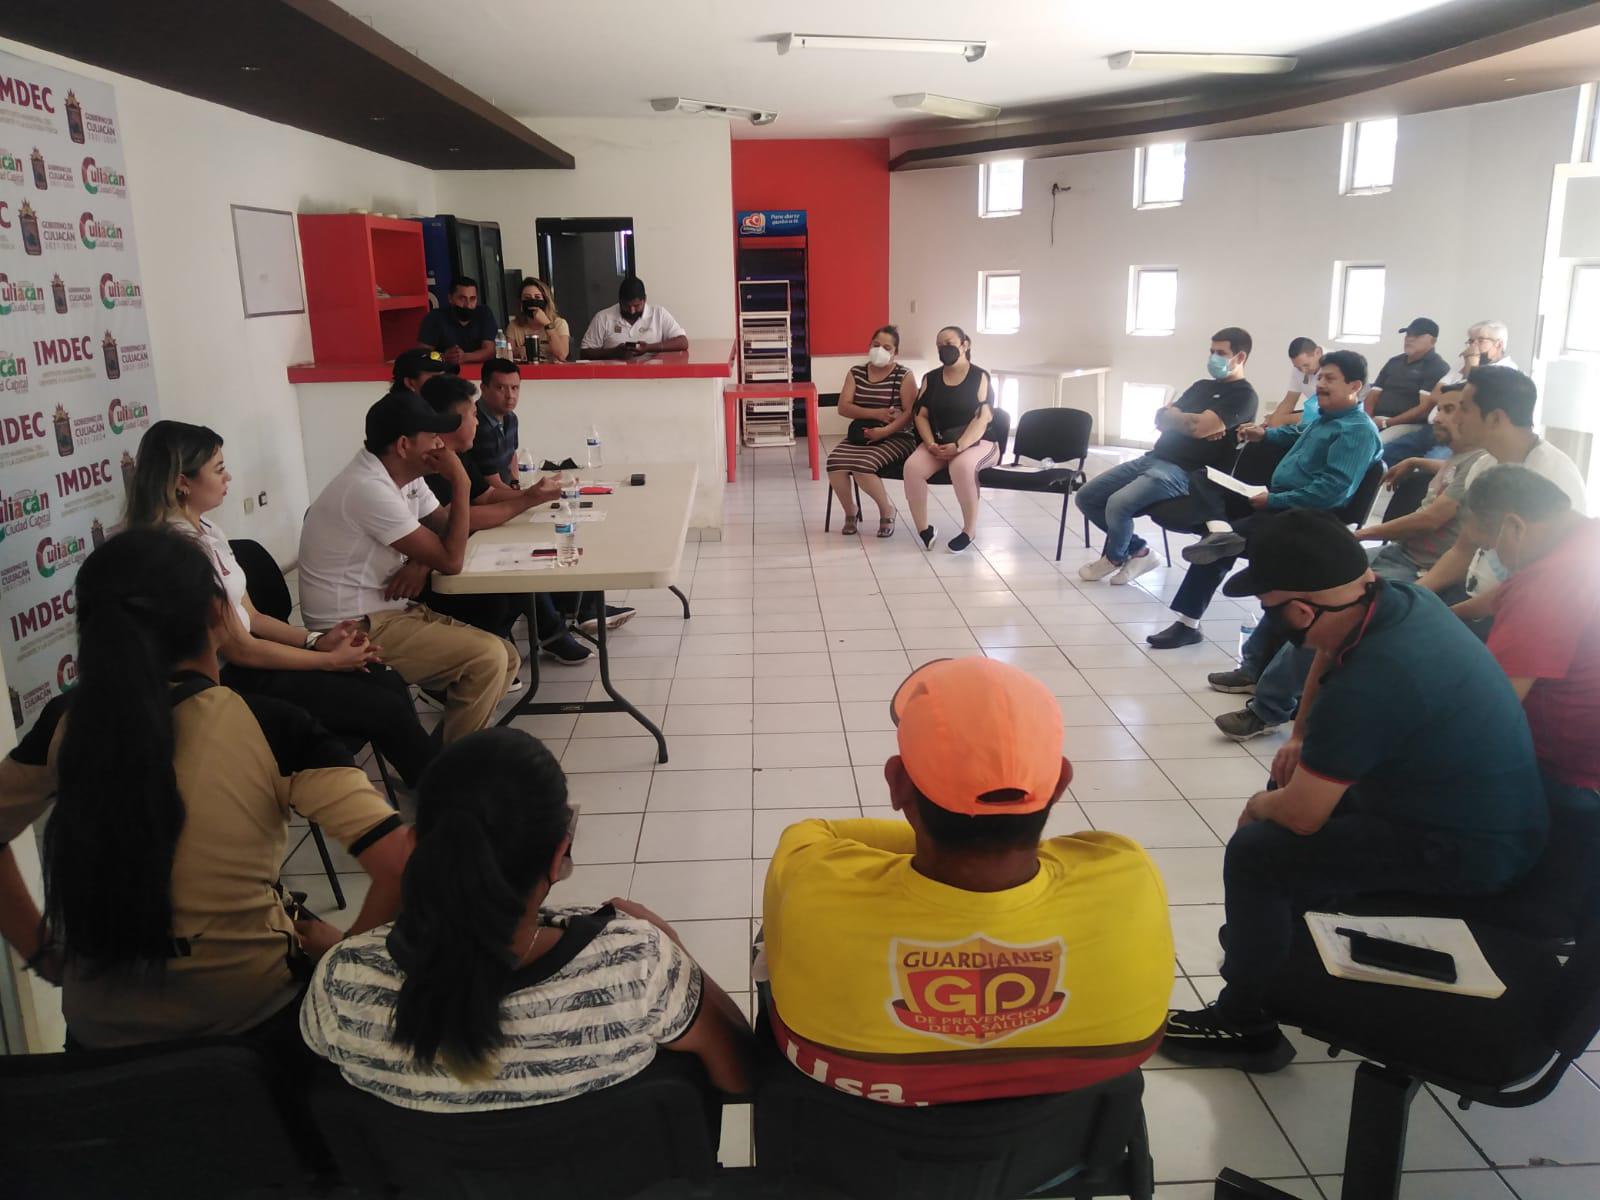 $!Se reúnen para organizar Liga Intercolonial de Futbol Siete, en Culiacán